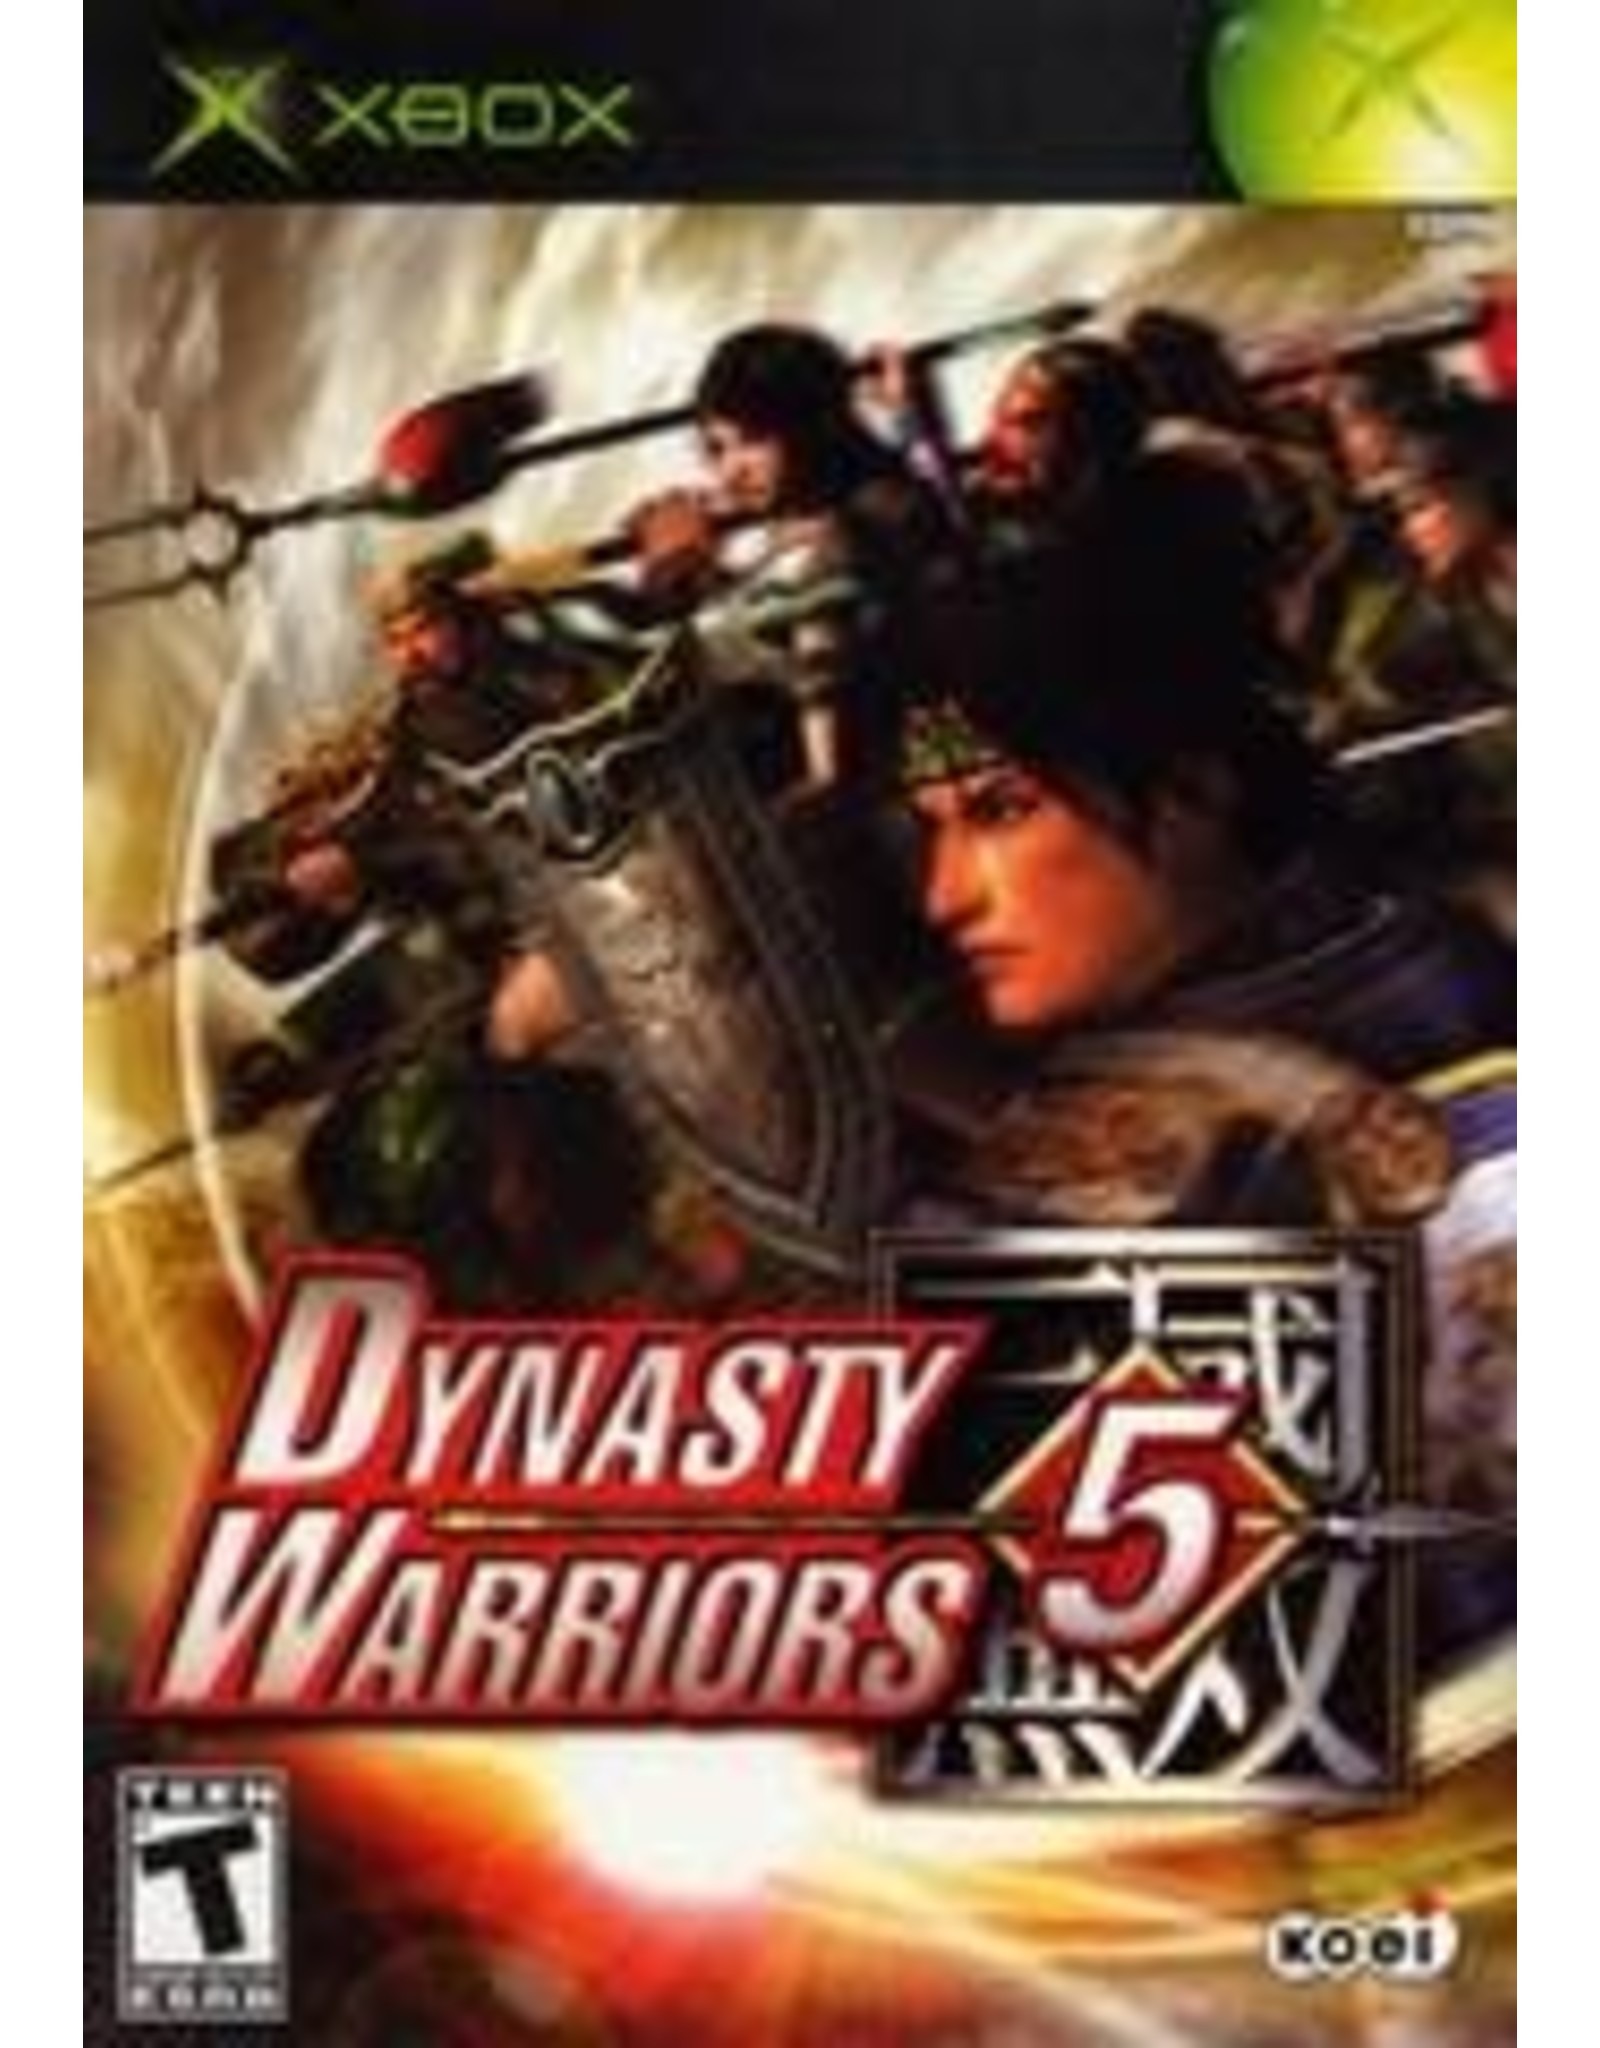 Xbox Dynasty Warriors 5 (CiB)